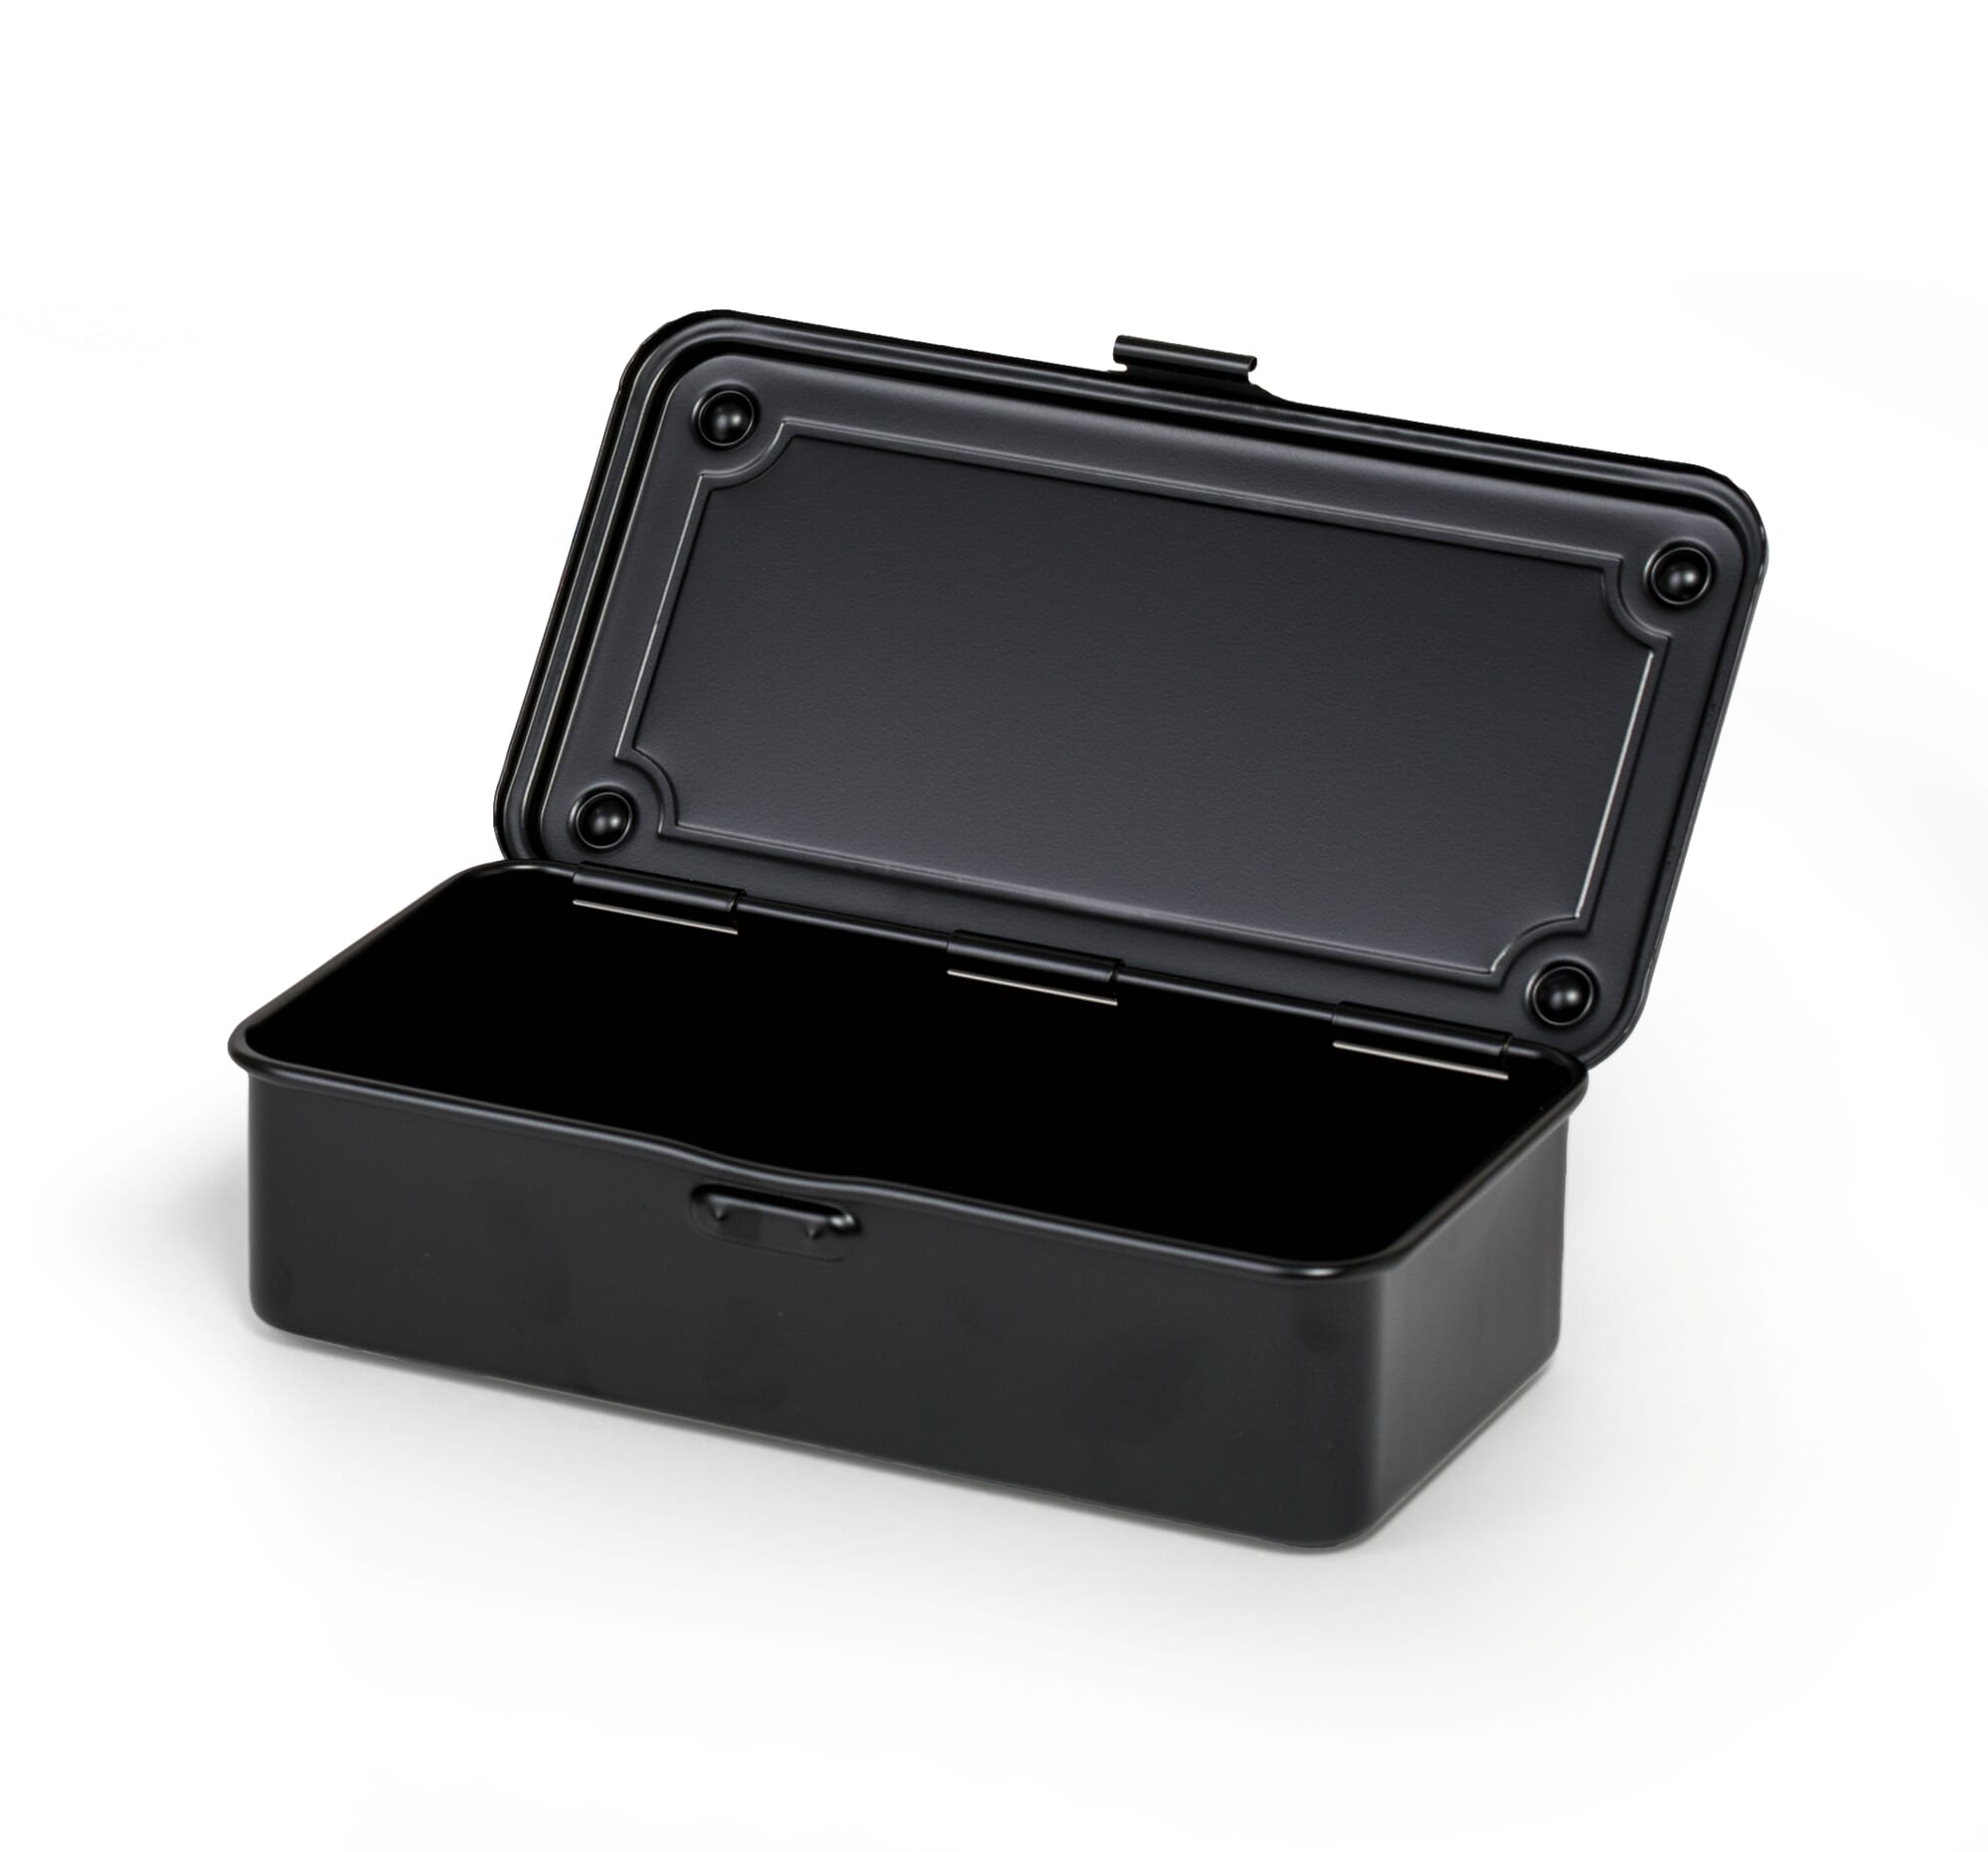 Stapelbox schwarz B/H/L: ca. 11x7,5x16,5 cm ▷ online bei POCO kaufen